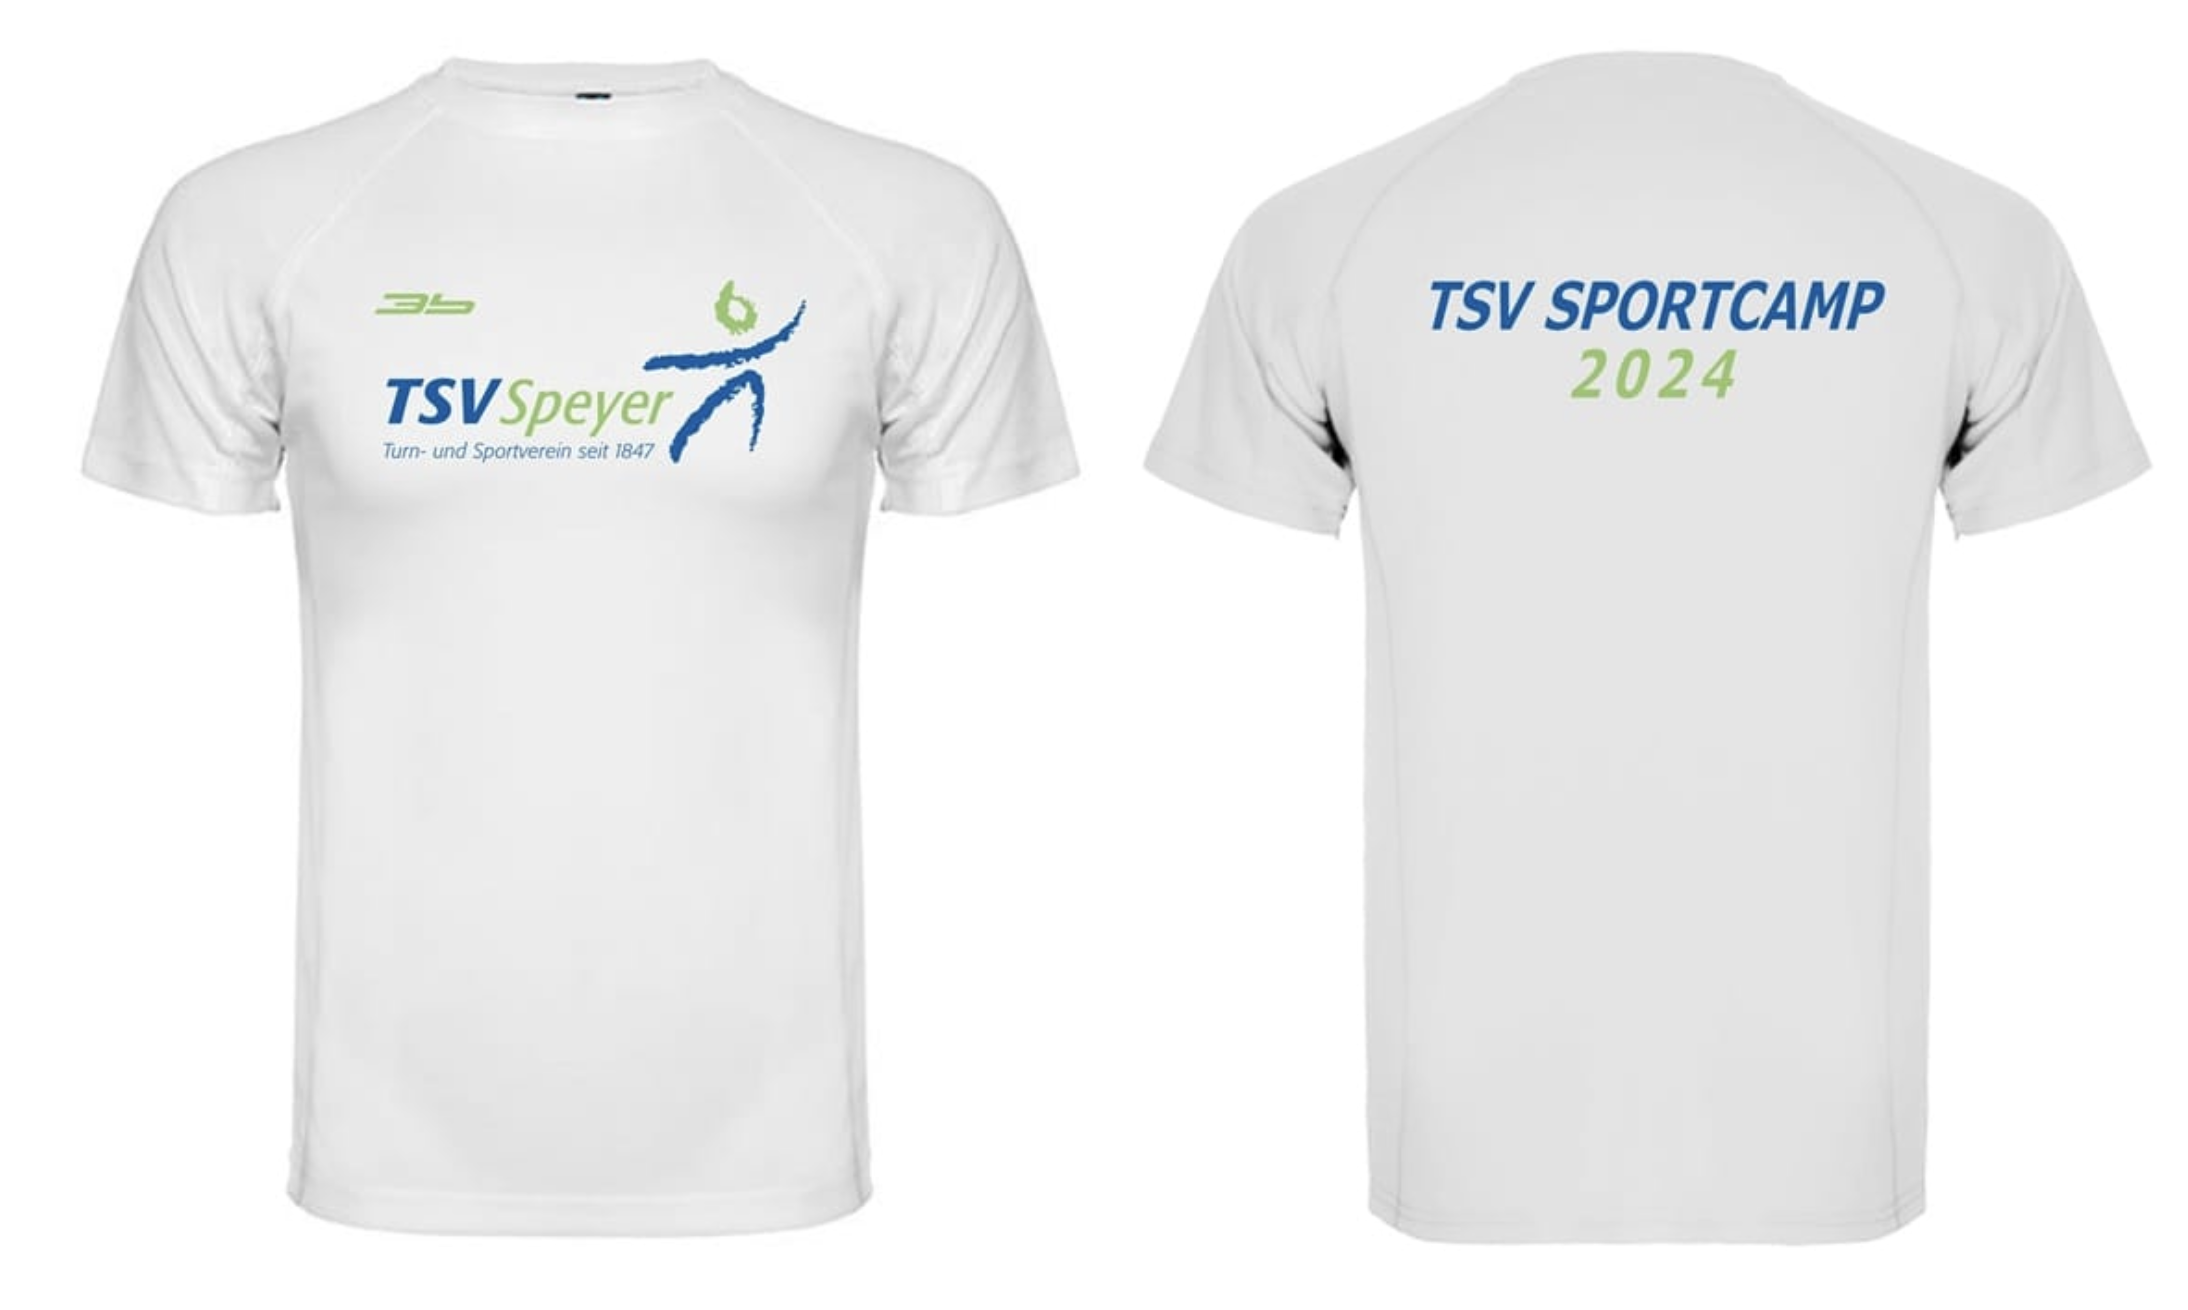 TSV Campshirt 2024